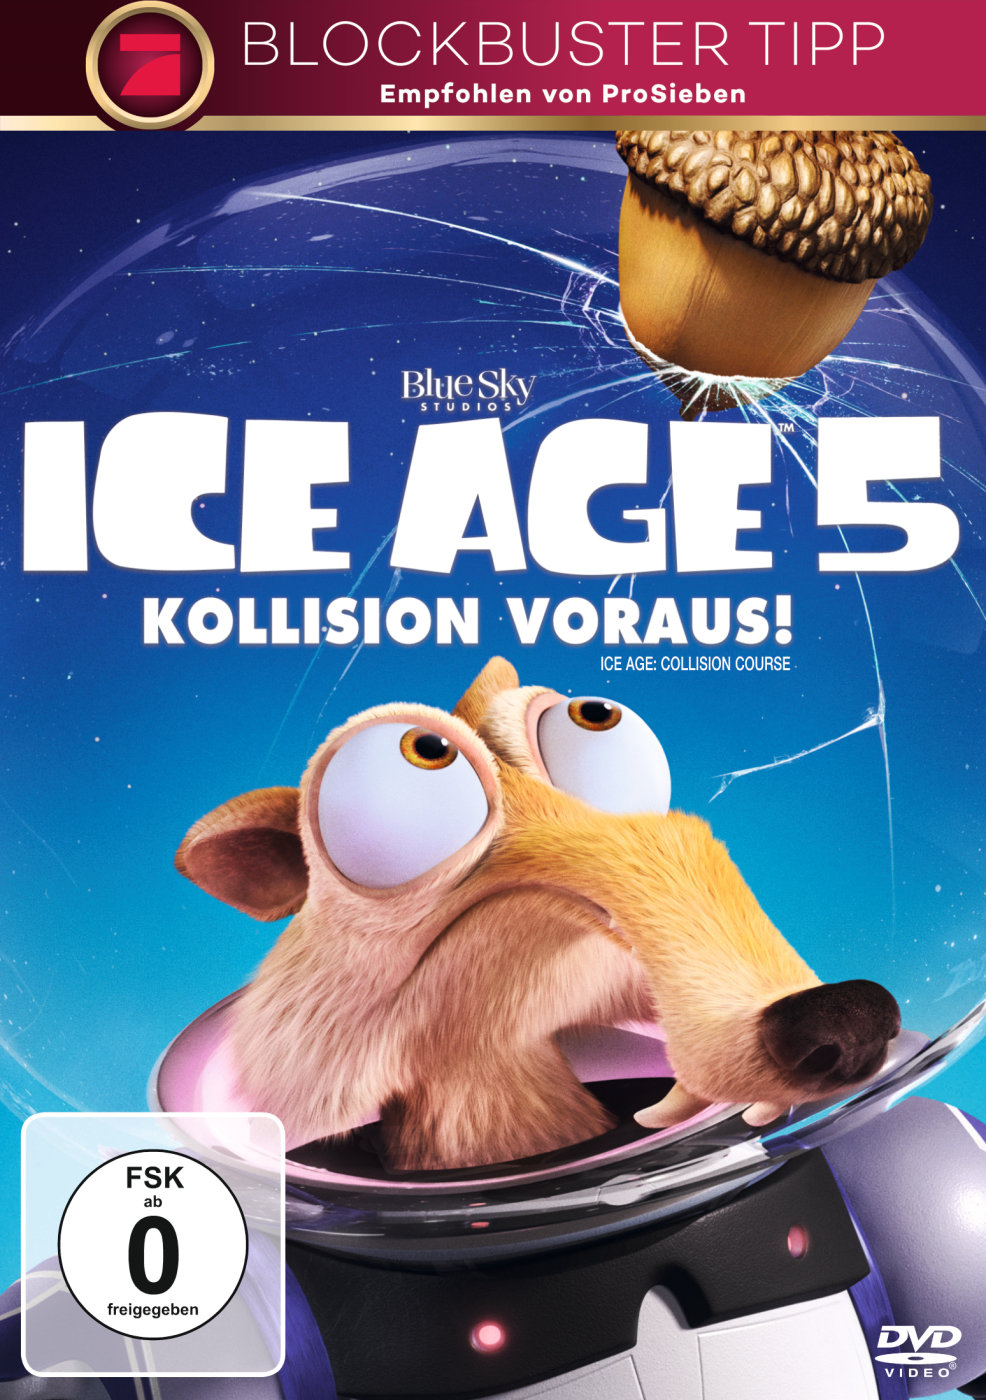 Ice Age 5 Kollision voraus 2016 Einzelfiguren zur Auswahl